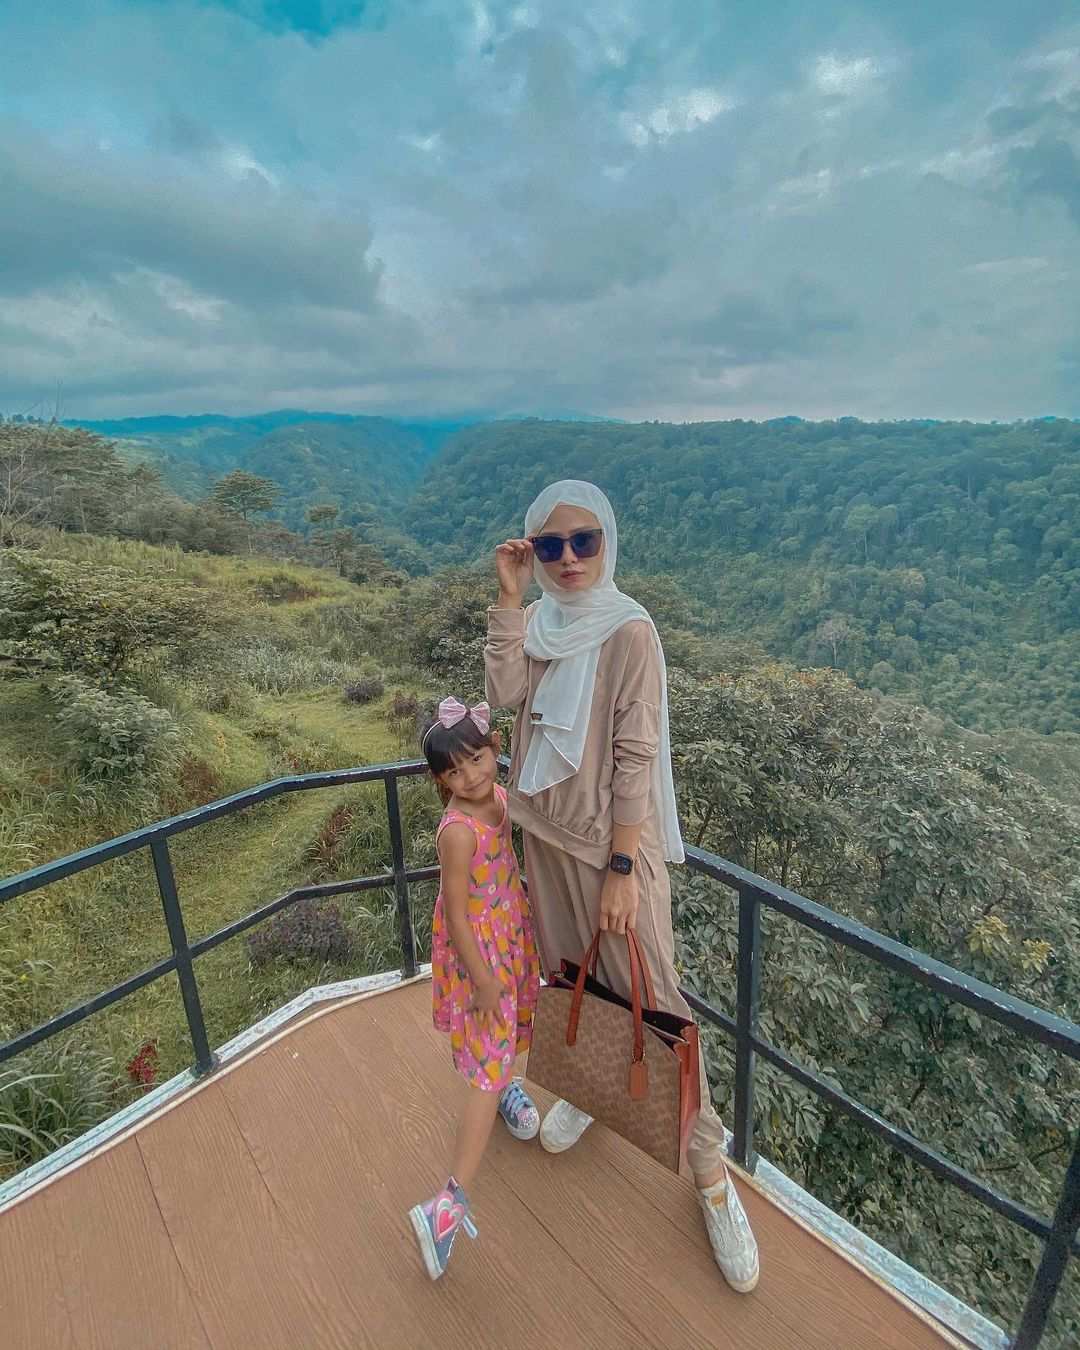 Berfoto Dengan Background Pemandangan di Lingkung Gunung, Image From @devika.tekaka